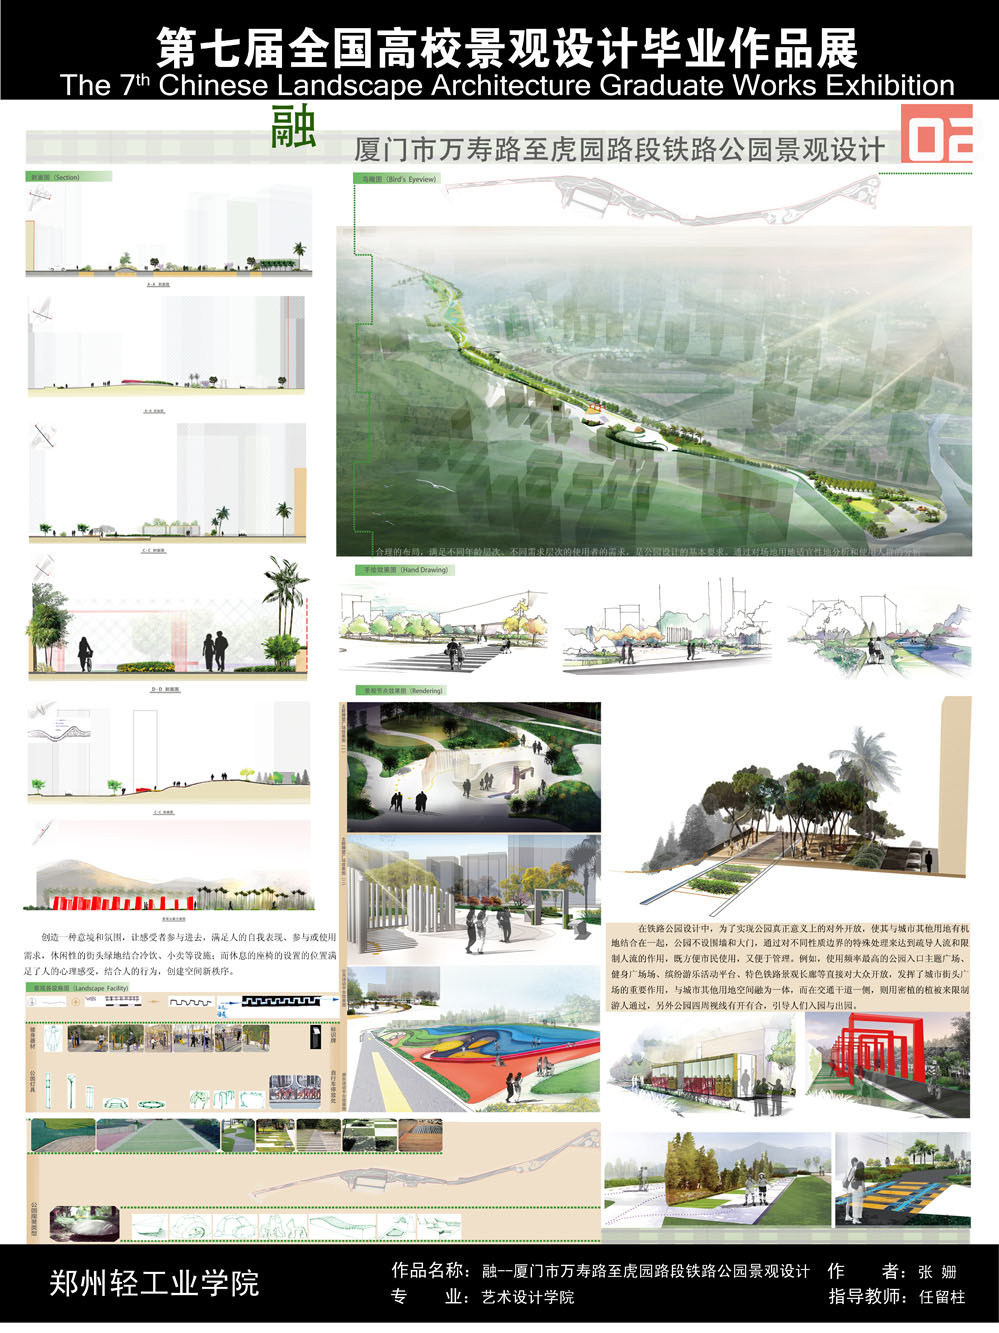 融——厦门市万寿路至虎园路段铁路公园景观设计-2